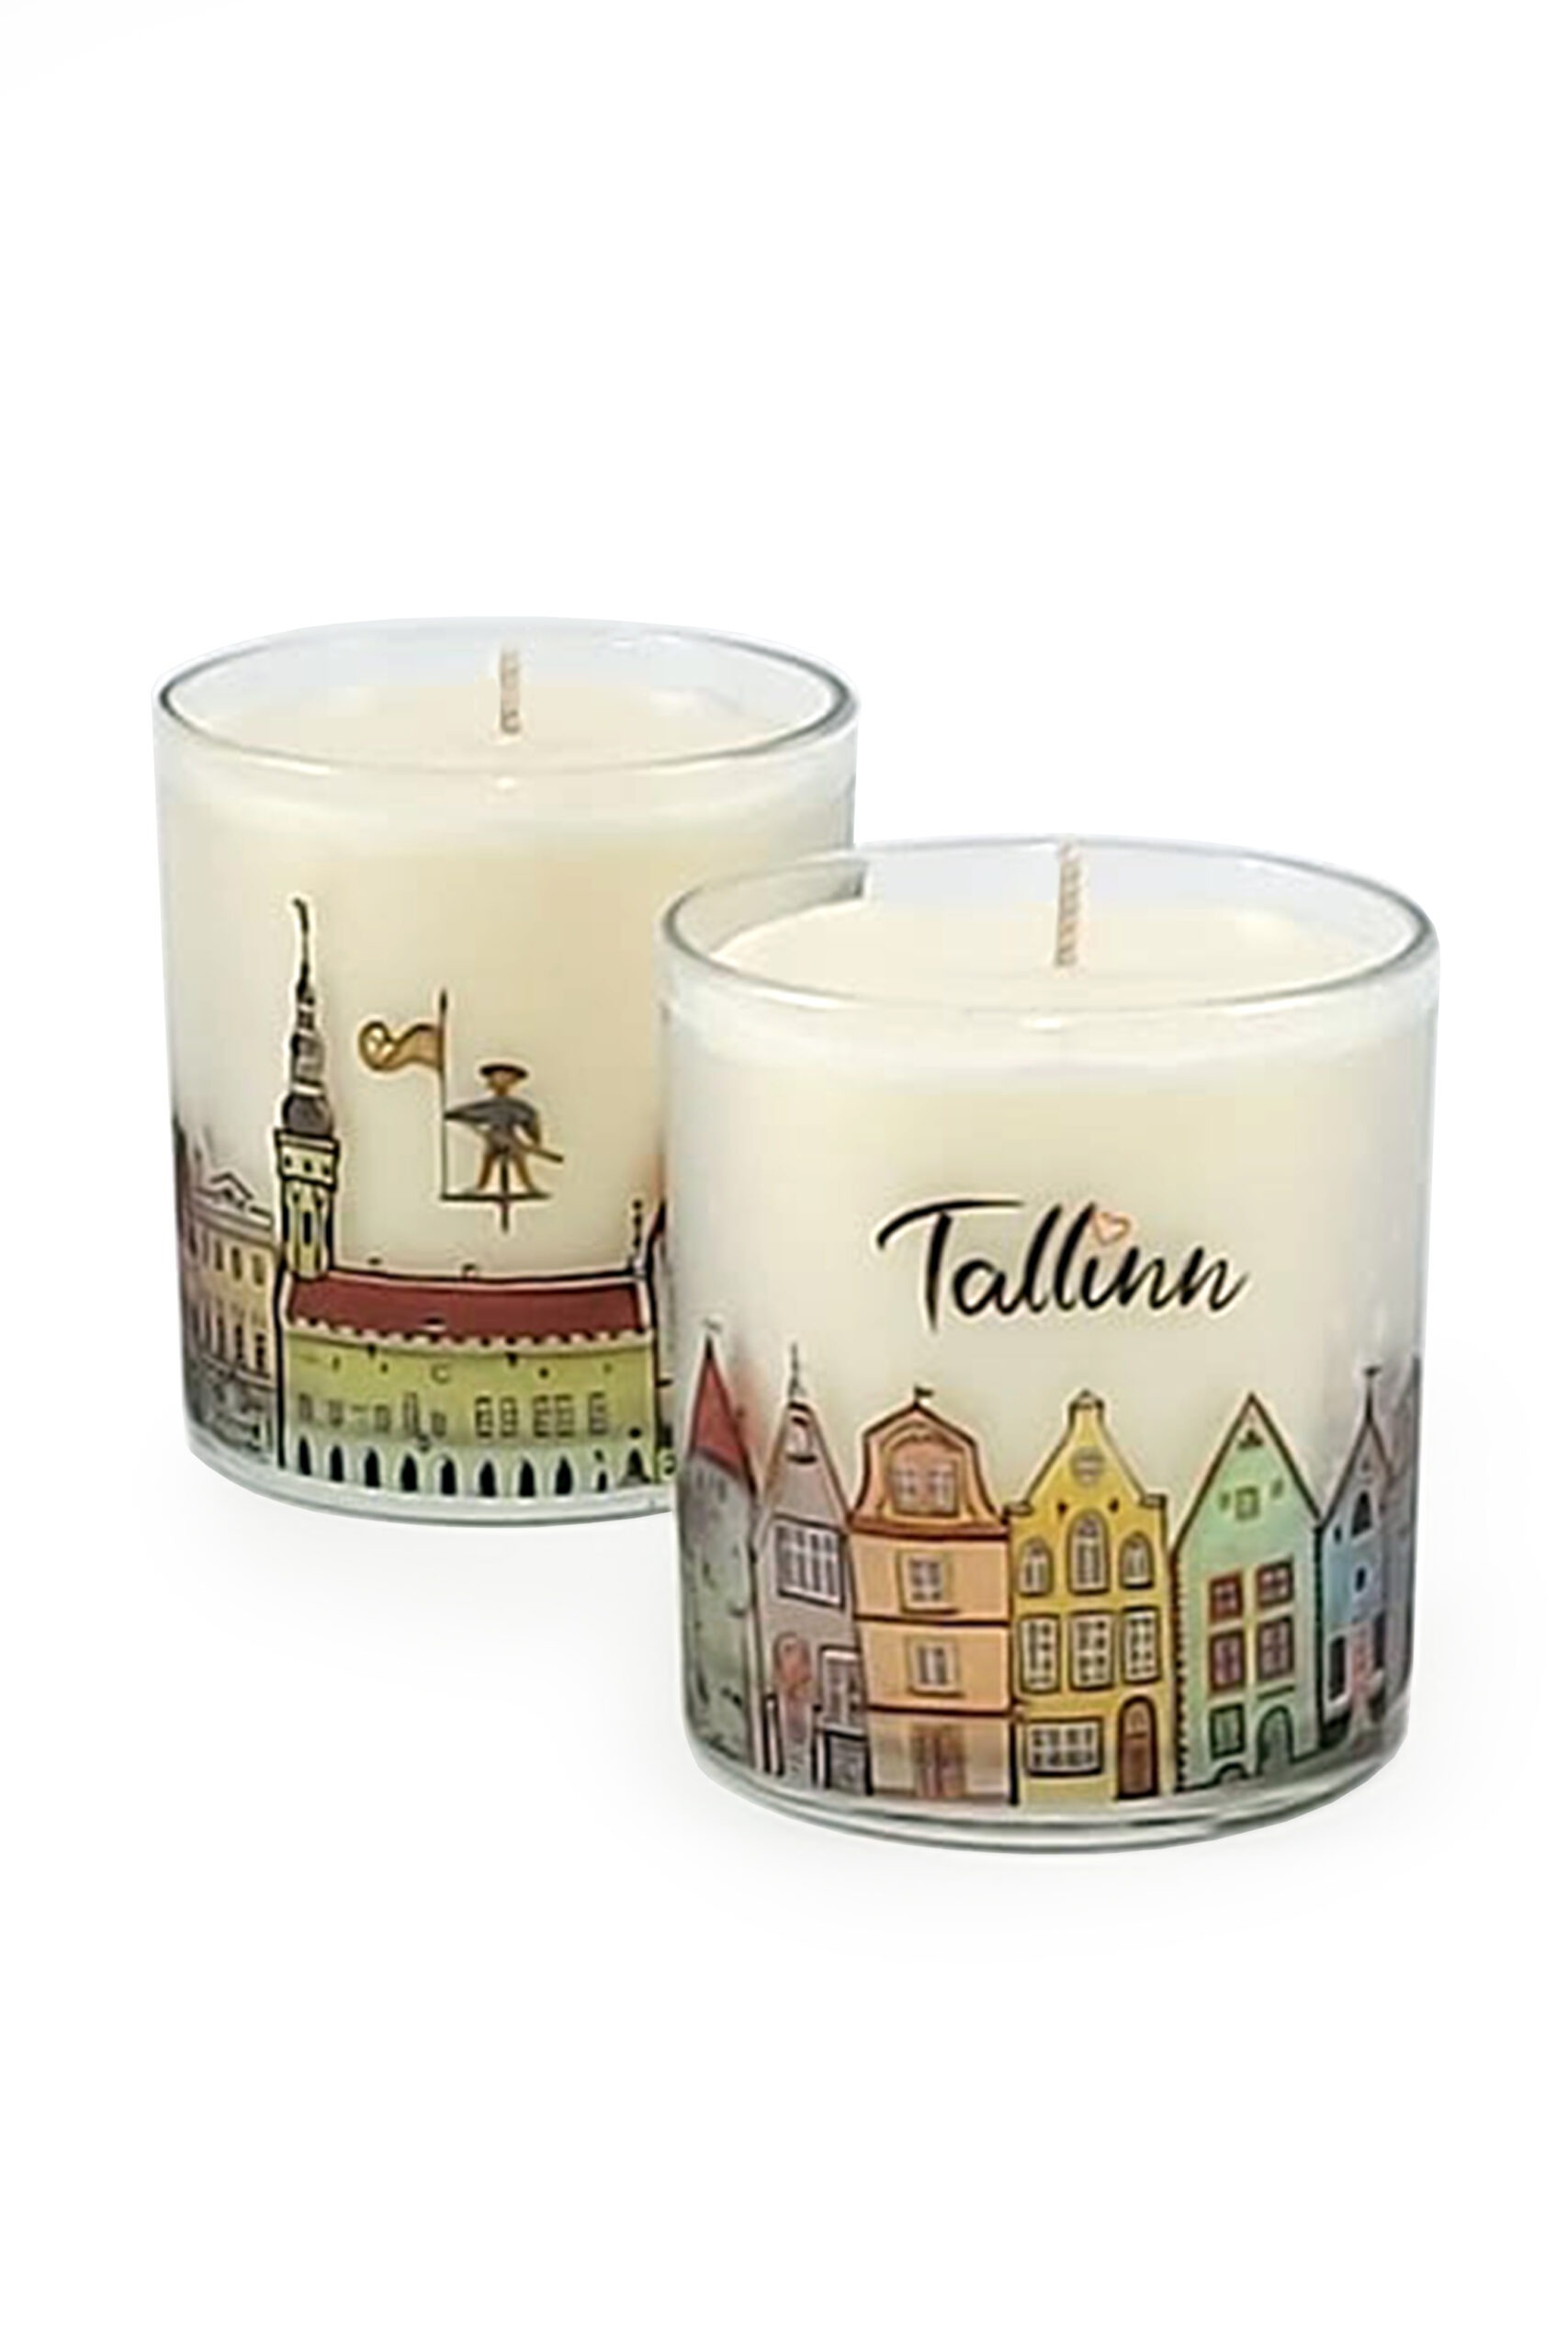 Rapeseed wax candle Tallinn and Estonia - Võhma